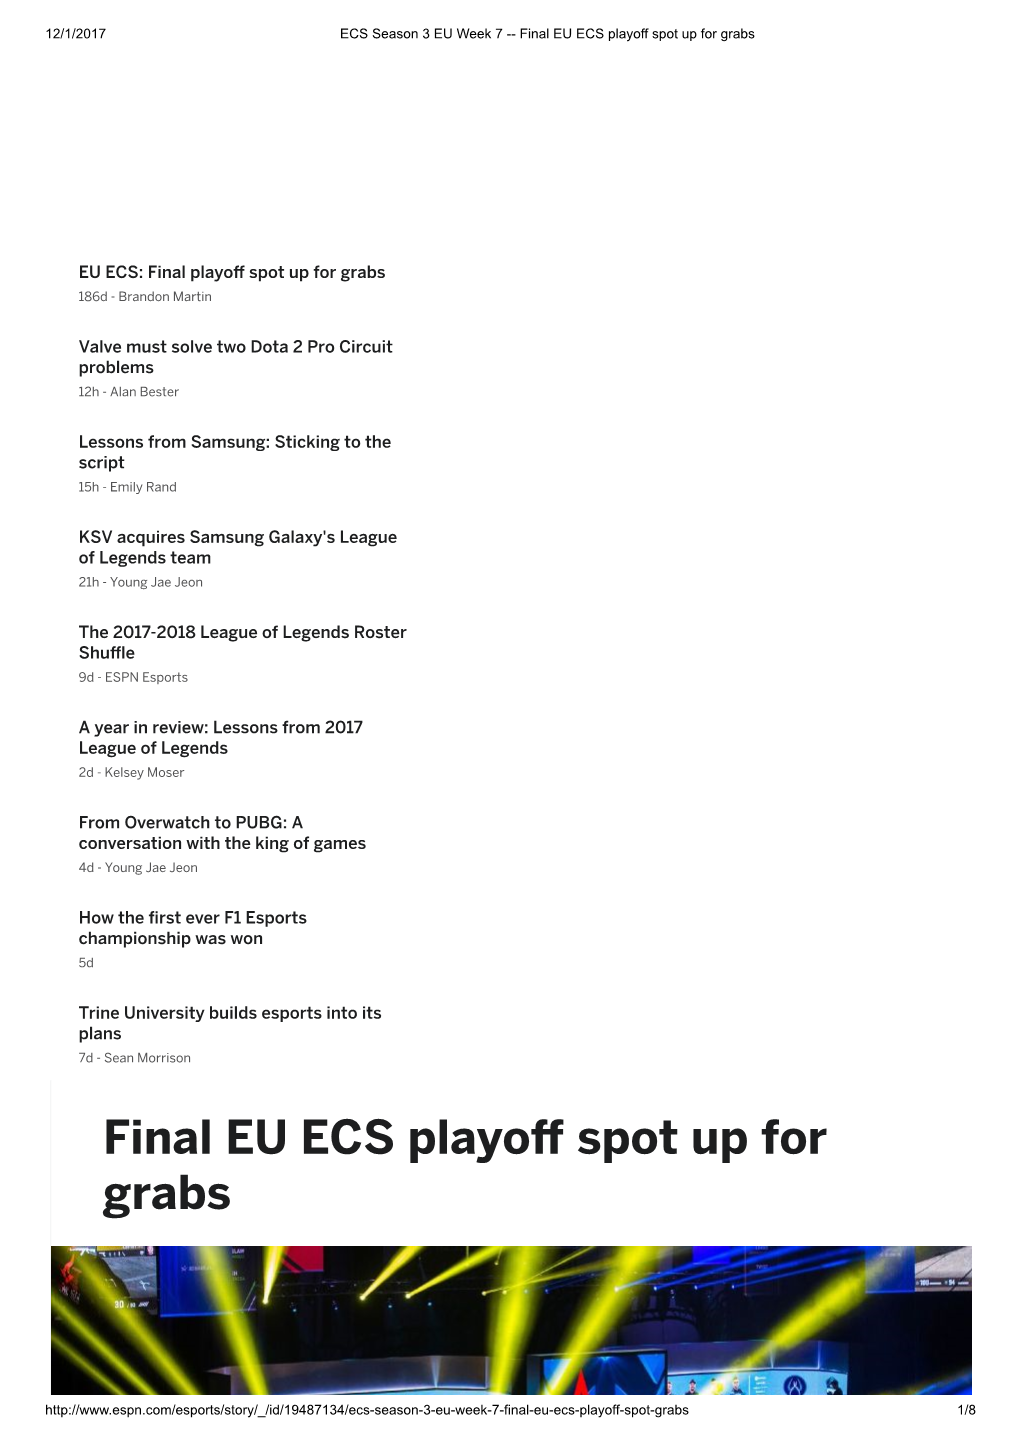 Final EU ECS Playoff Spot up for Grabs